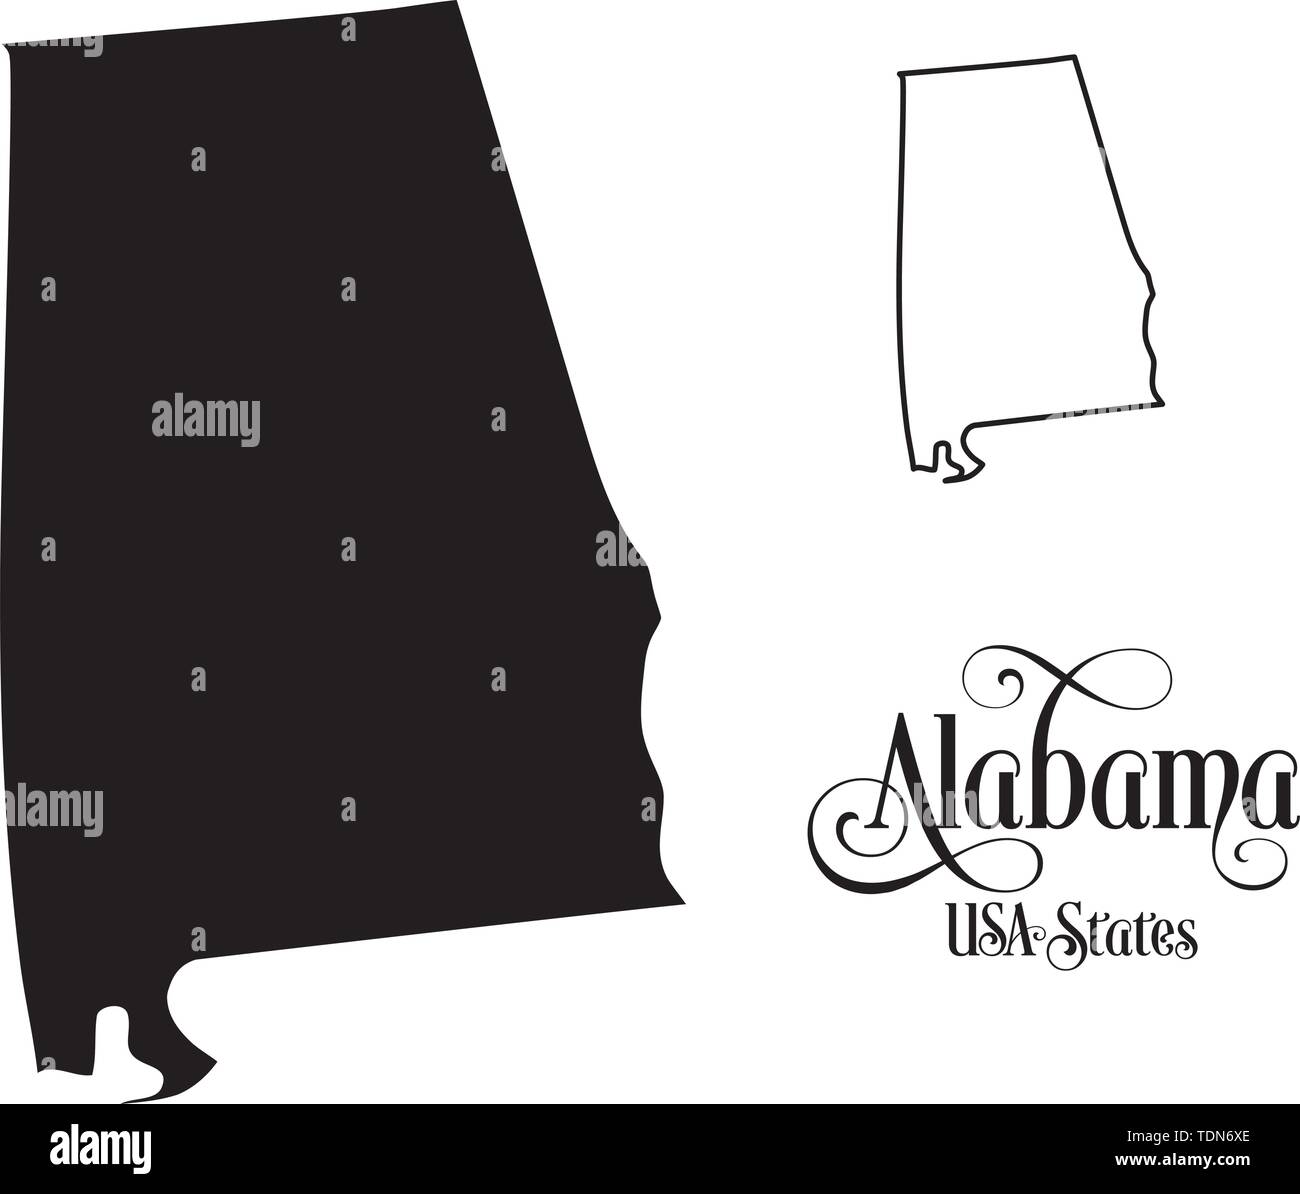 Mappa degli Stati Uniti d'America (USA) stato di Alabama - Illustrazione su sfondo bianco. Illustrazione Vettoriale